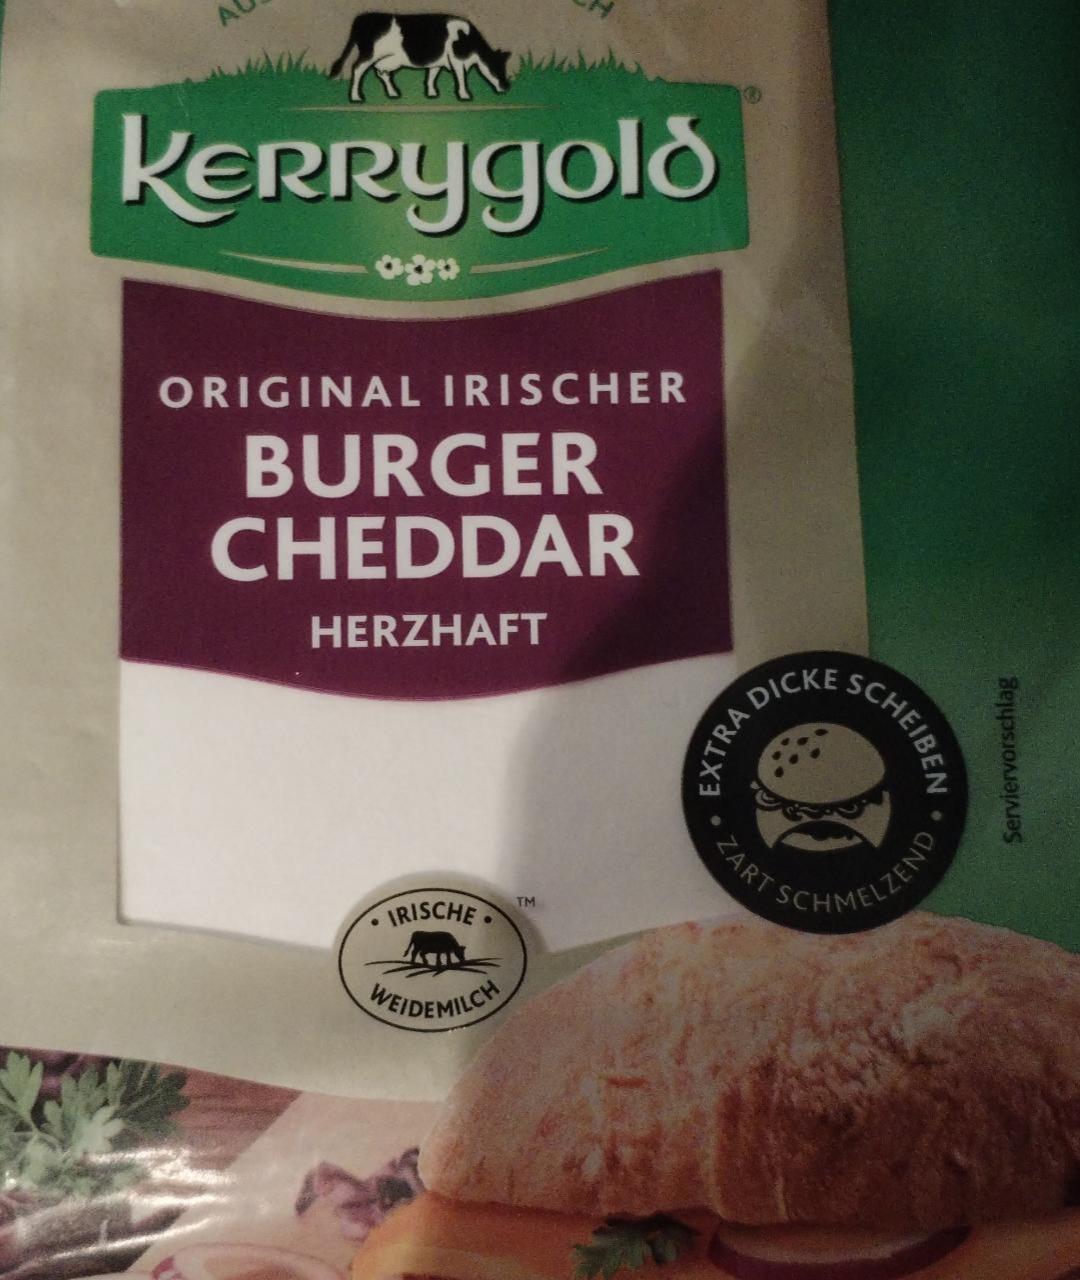 Fotografie - originál irischer burger chedar herzhaft Kerrygold